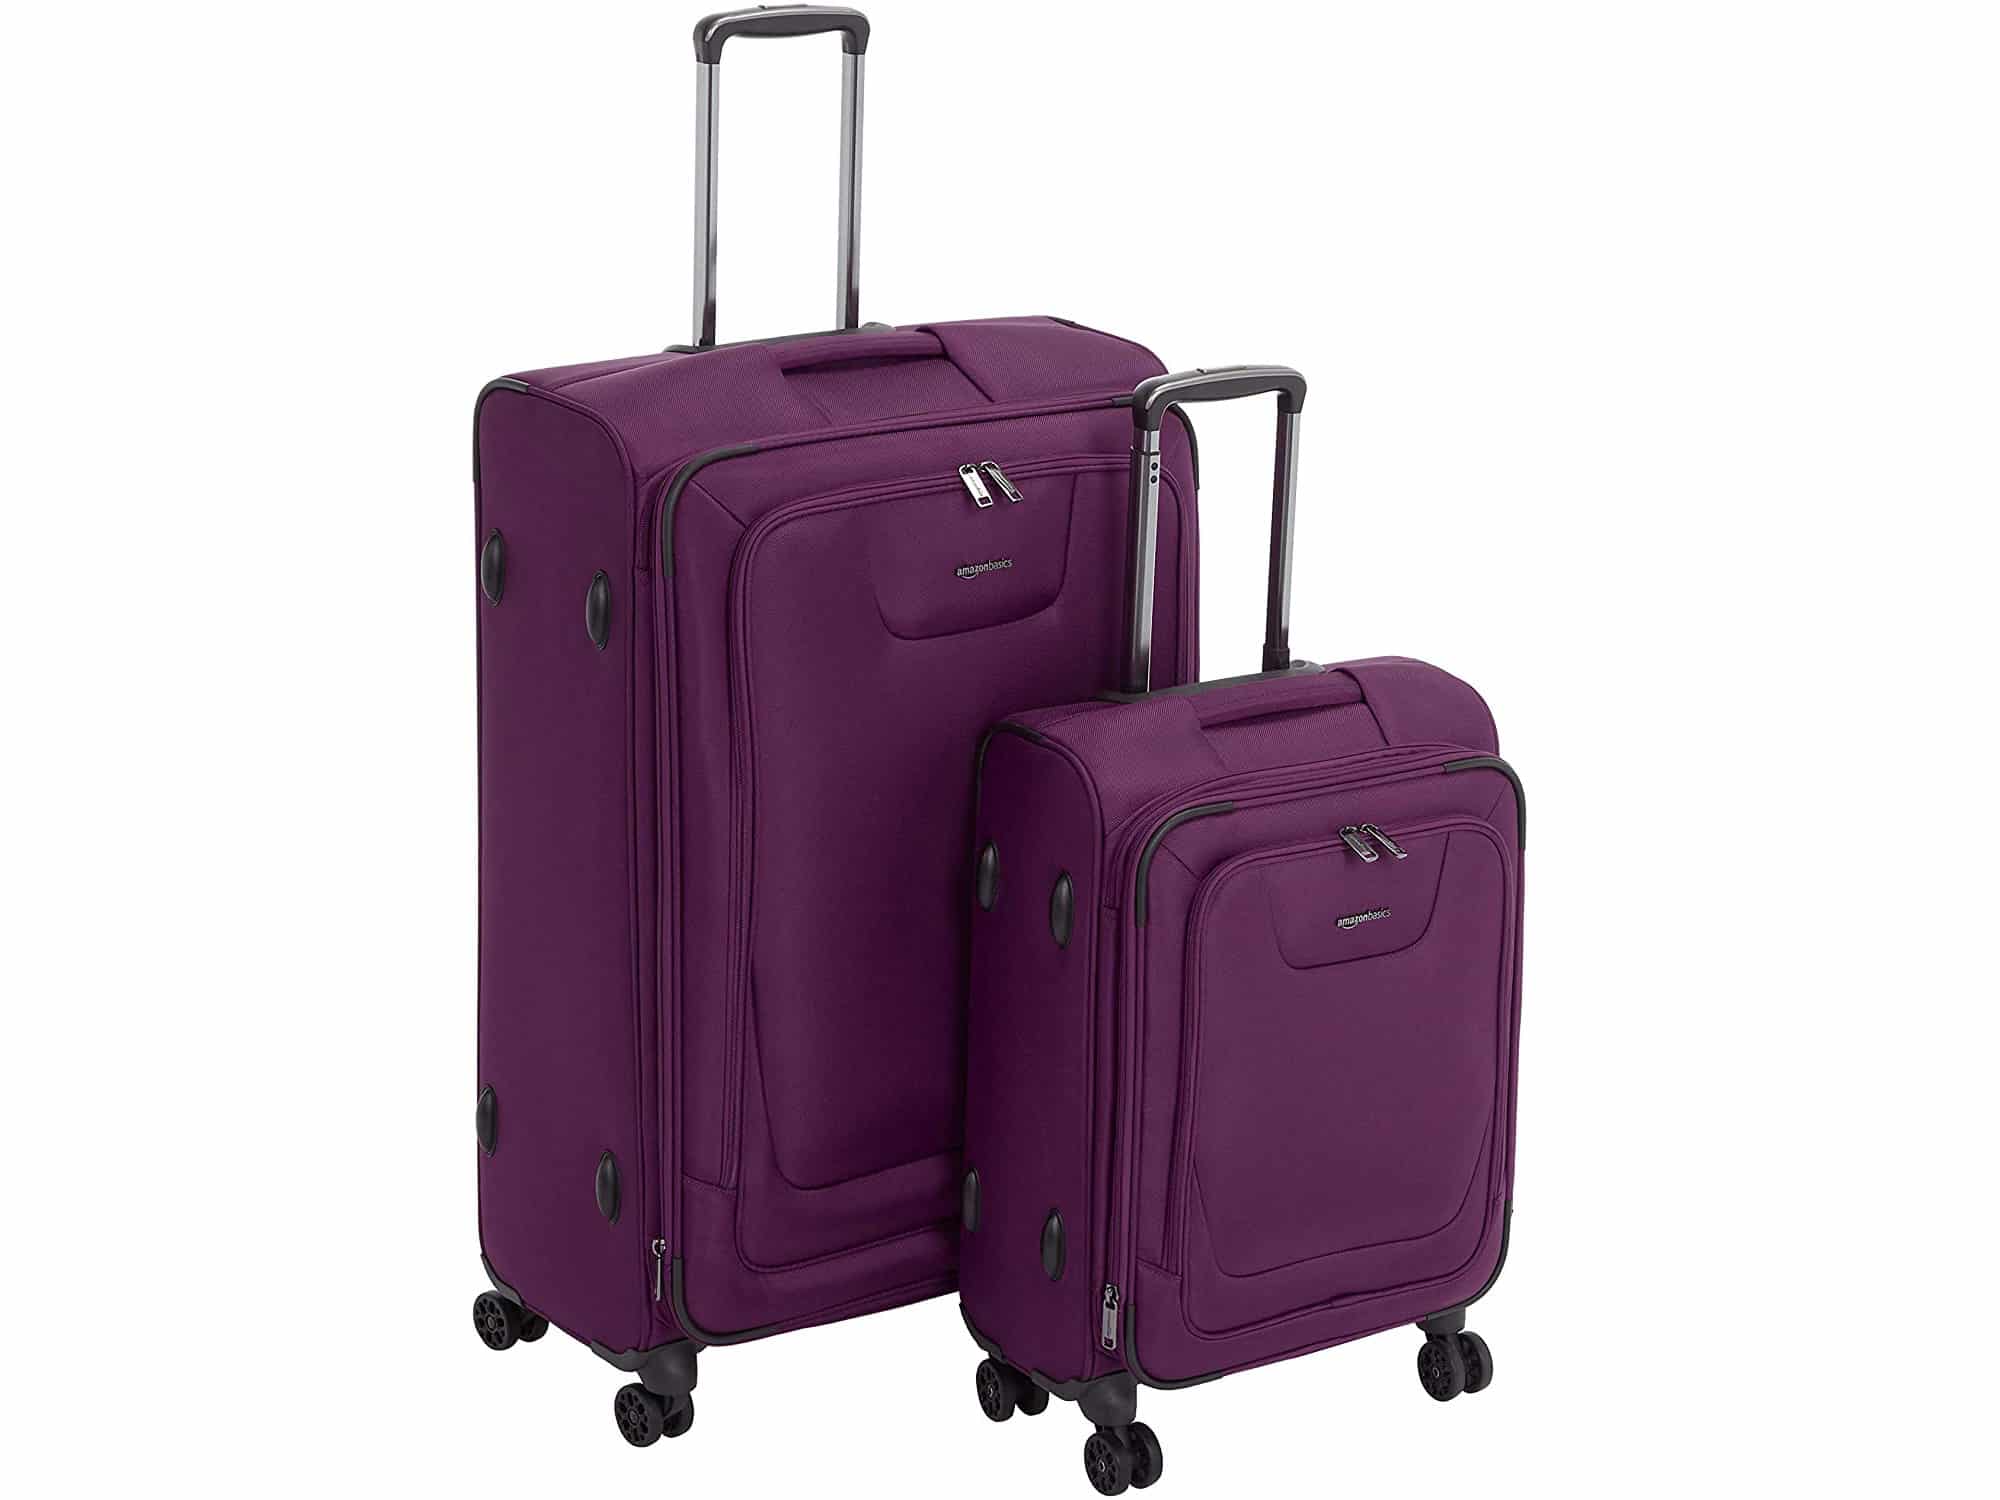 Amazon Basics luggage